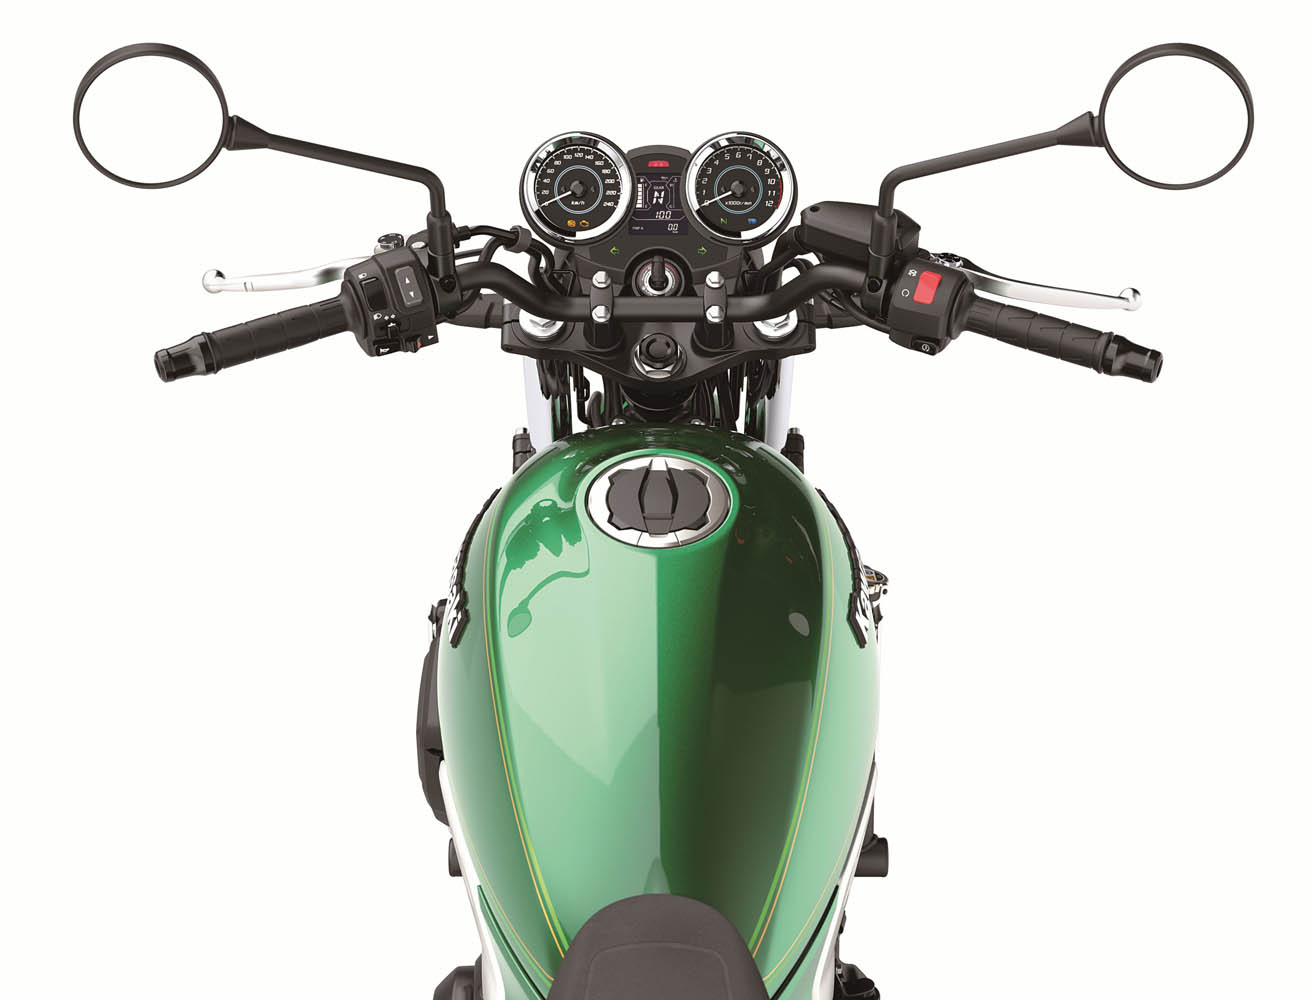 2022 Kawasaki Z650RS motorcycle gas tank and controls